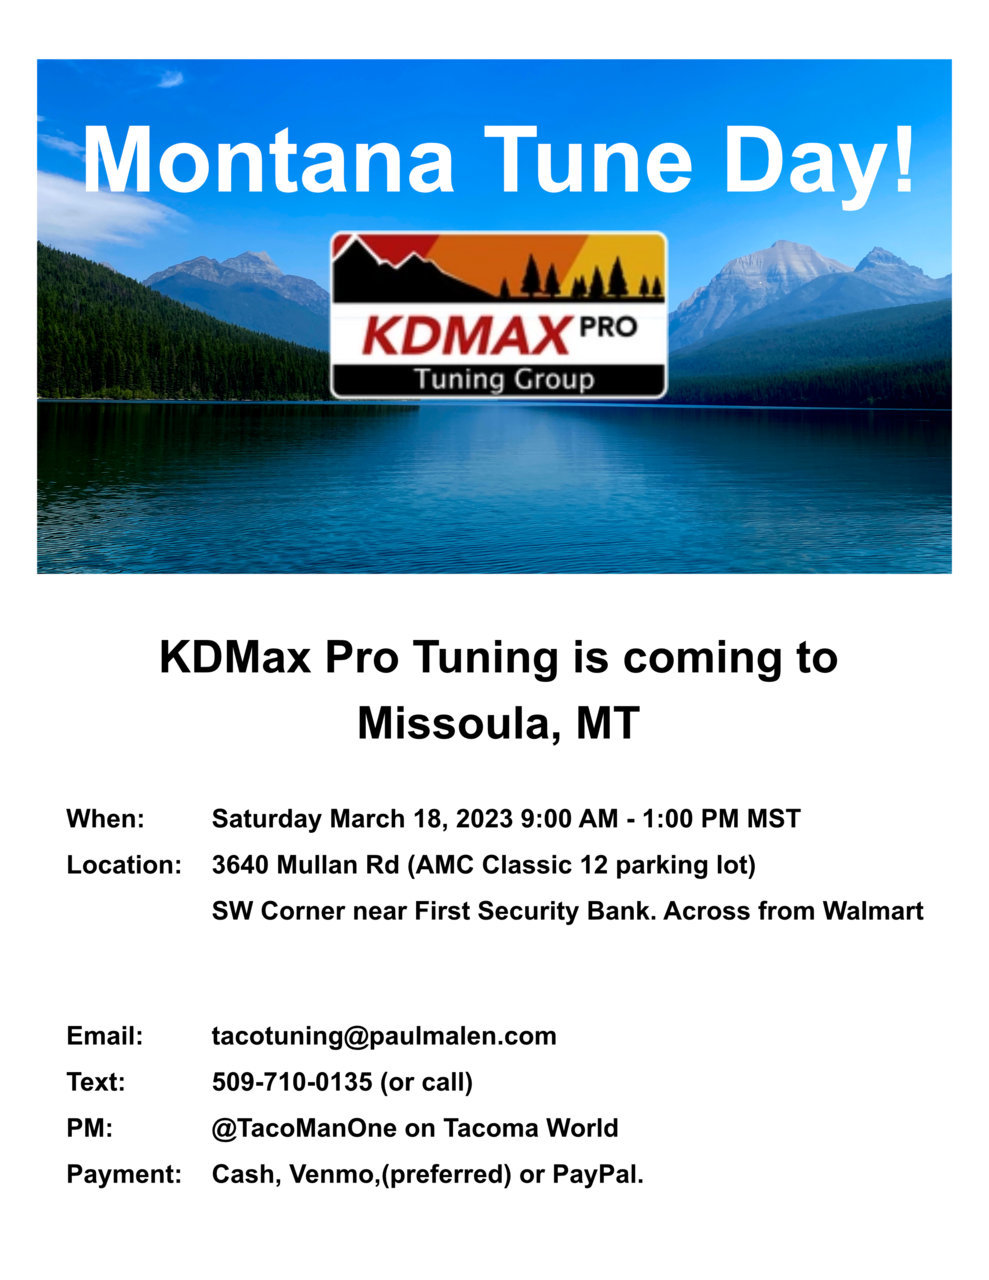 Montana Tune Day 2023-03-18.jpg